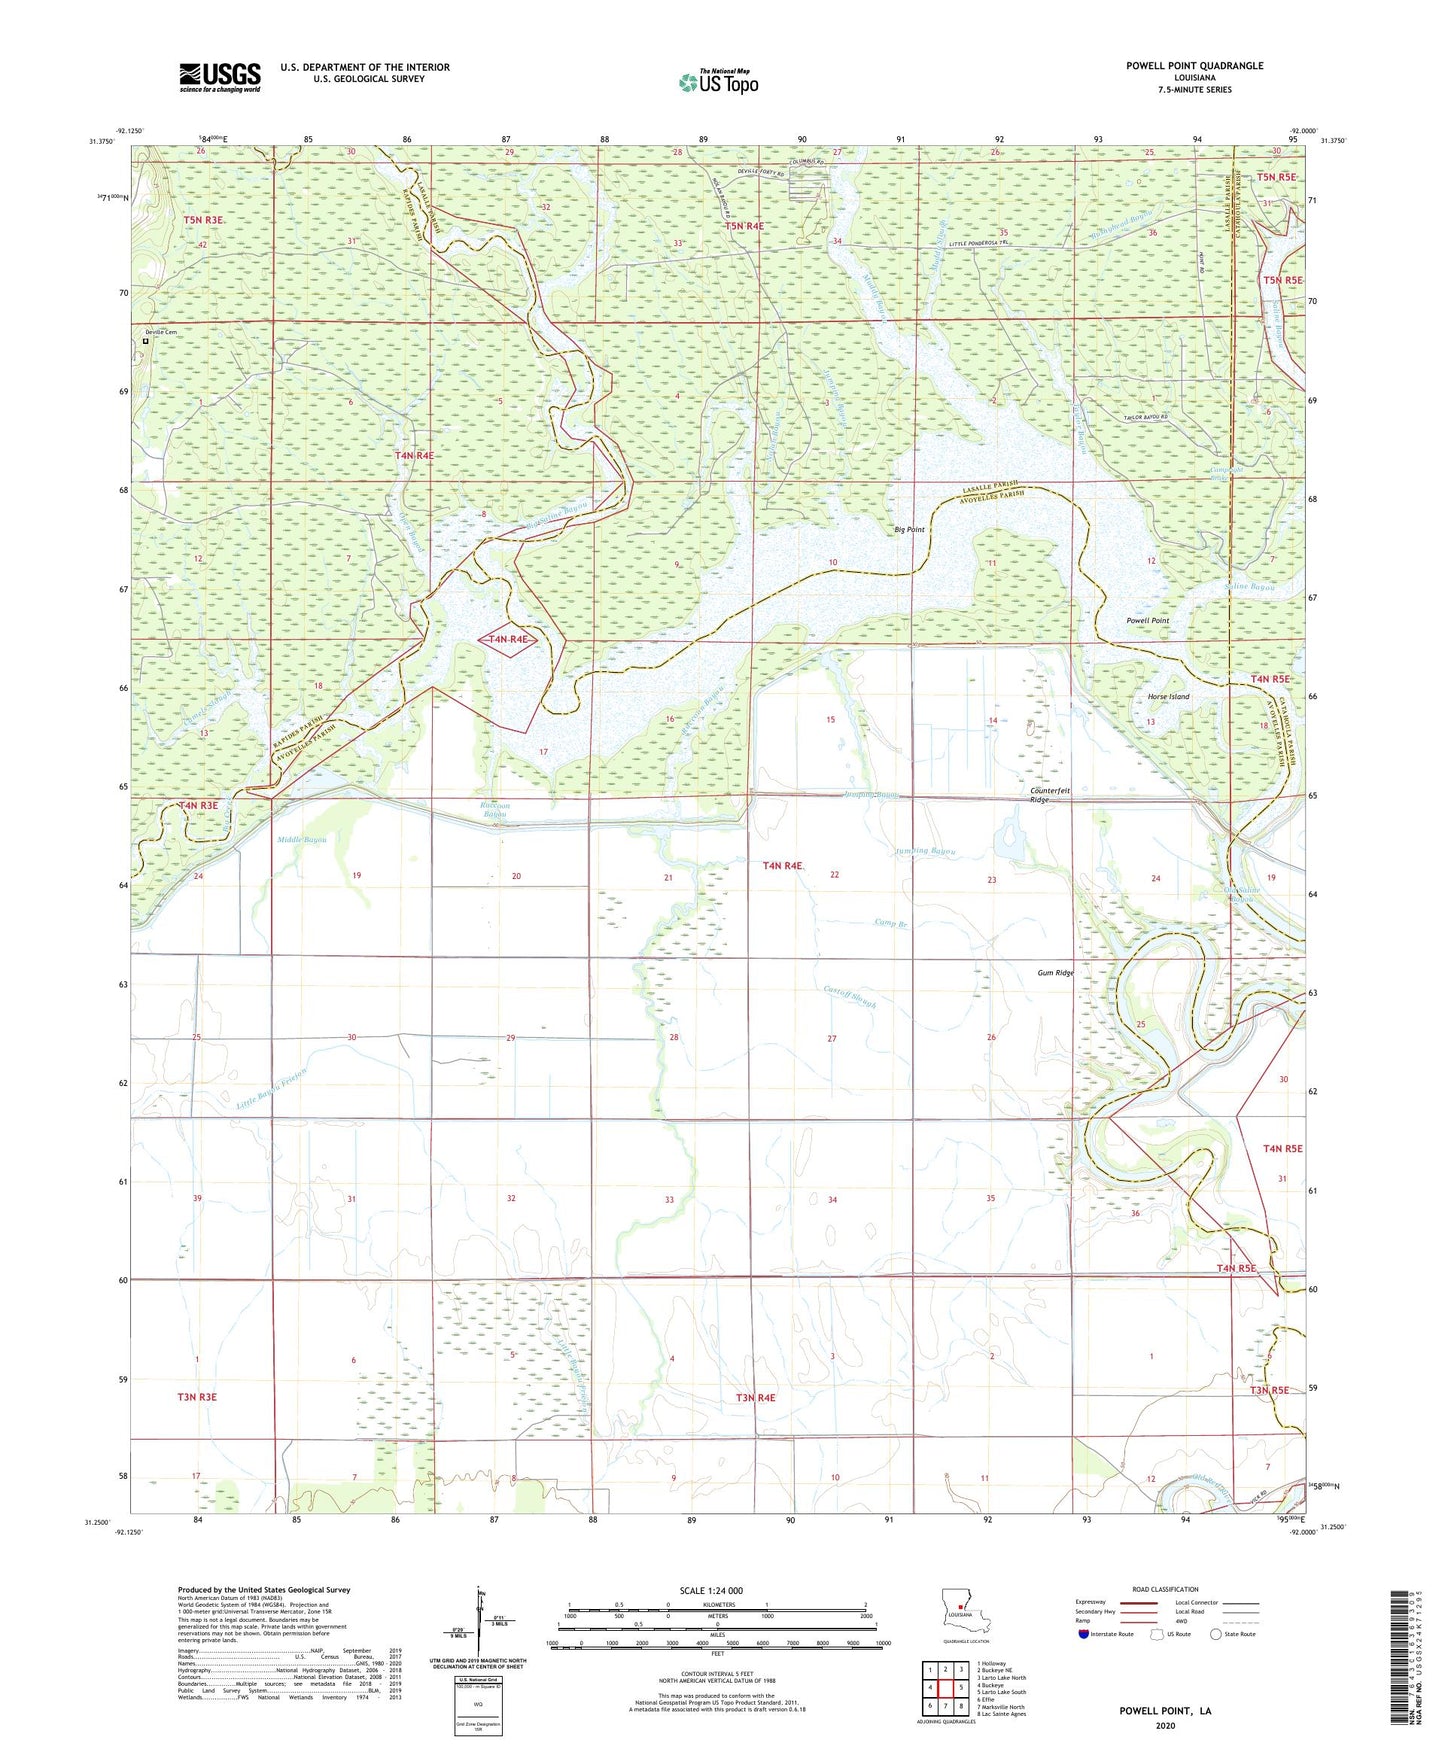 Powell Point Louisiana US Topo Map Image